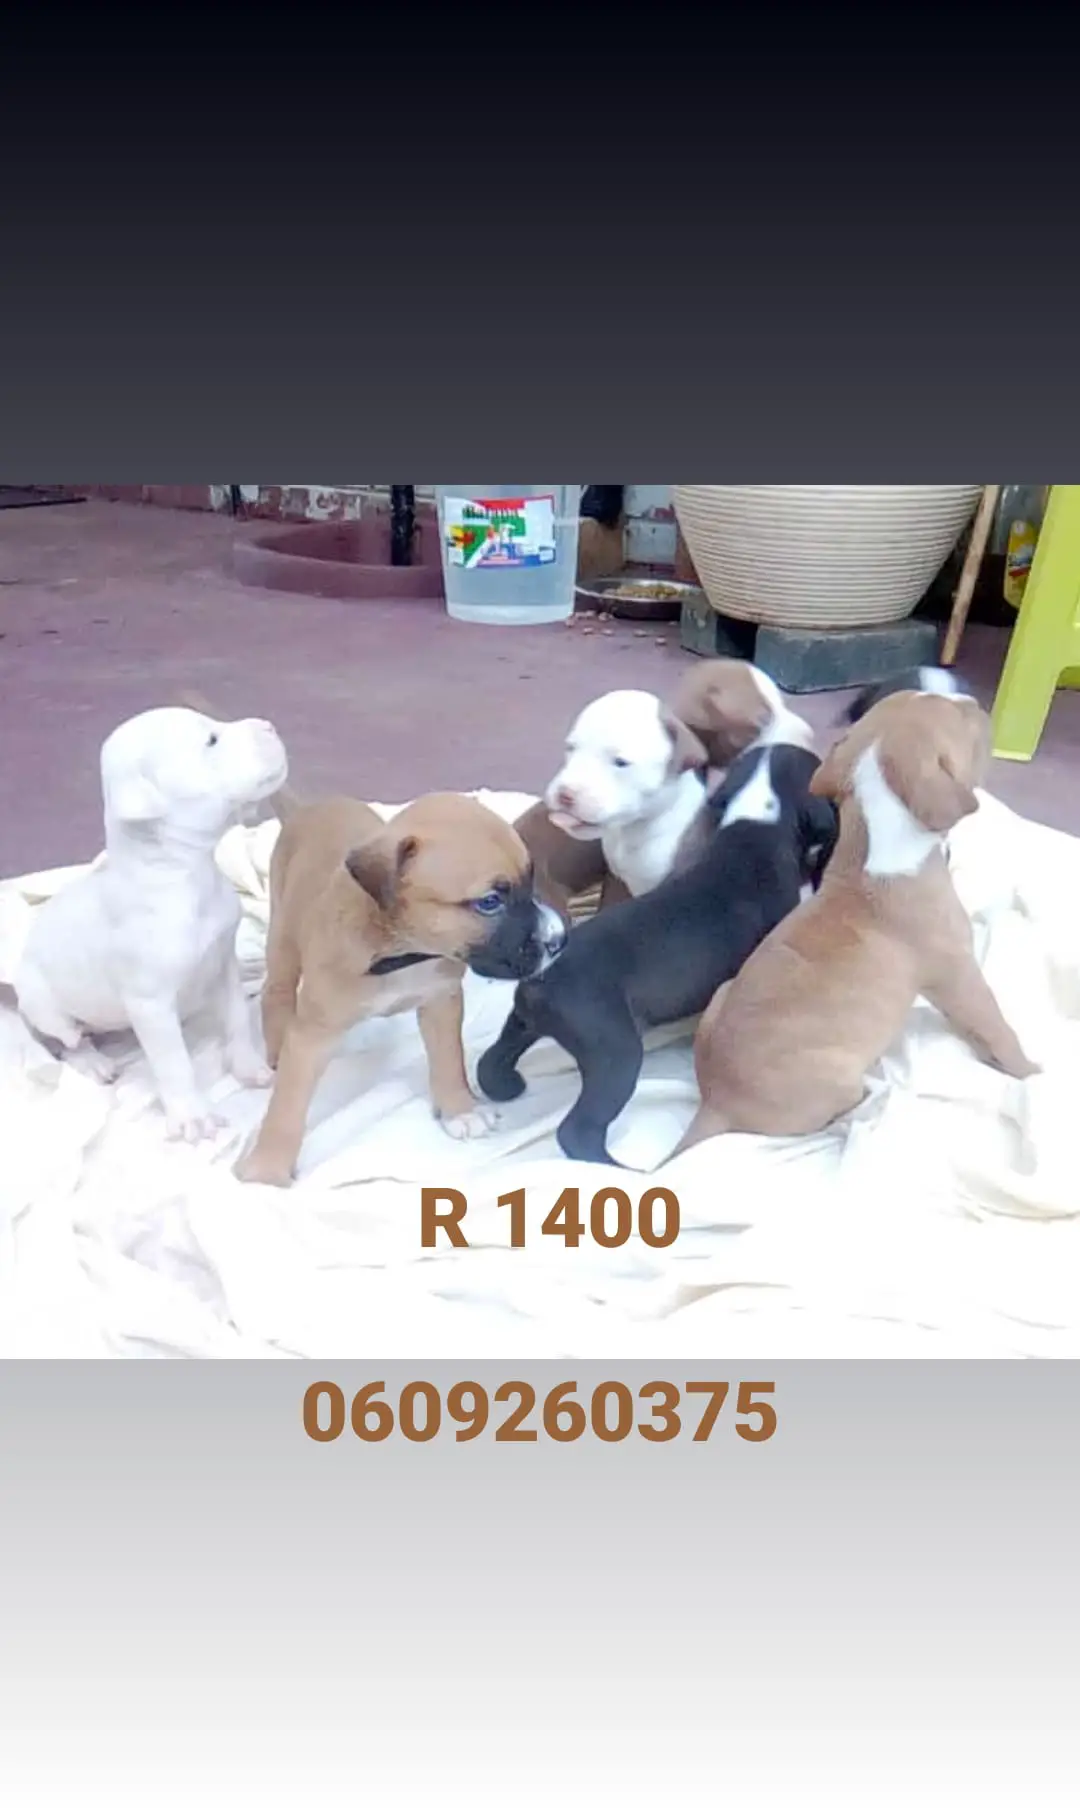 Pitbull Puppies in Pretoria (24/02/2021)